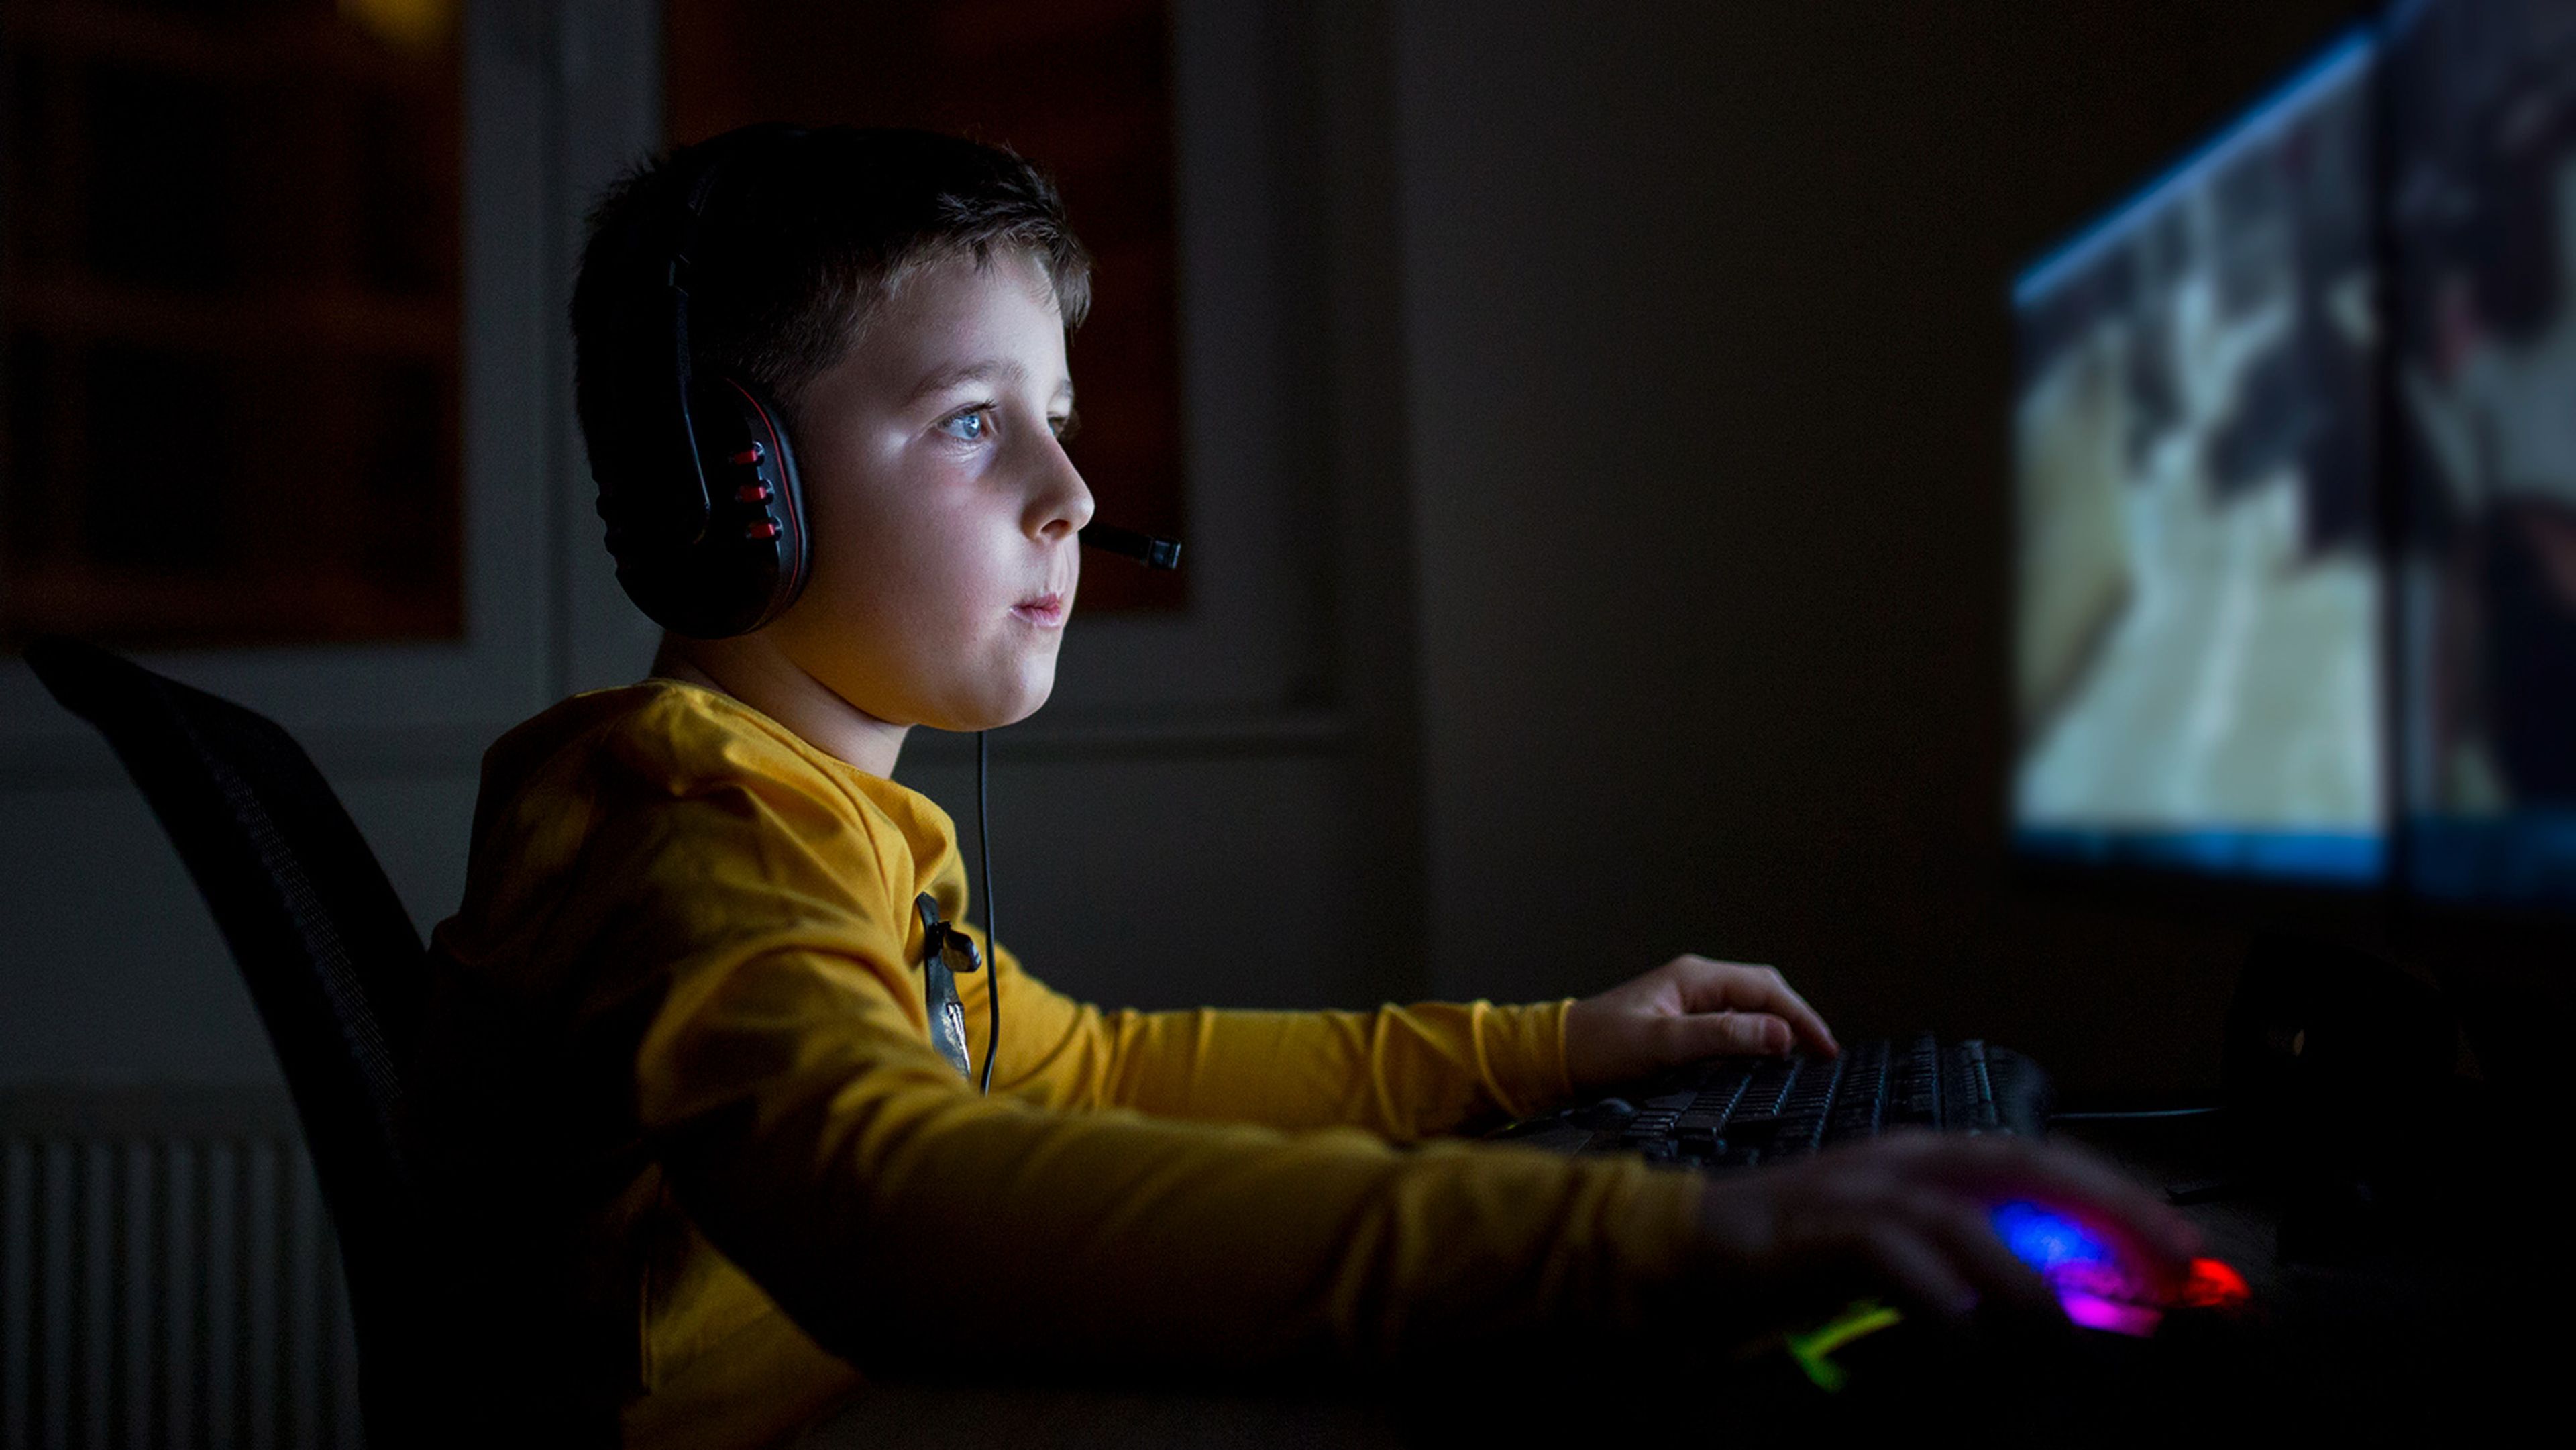 Играющий в компьютерные игры. Дети играющие в компьютерные игры. Подросток играет в компьютерные игры. Ребенок играющий в компьютерную игру. Мальчик за игрой в компьютер.